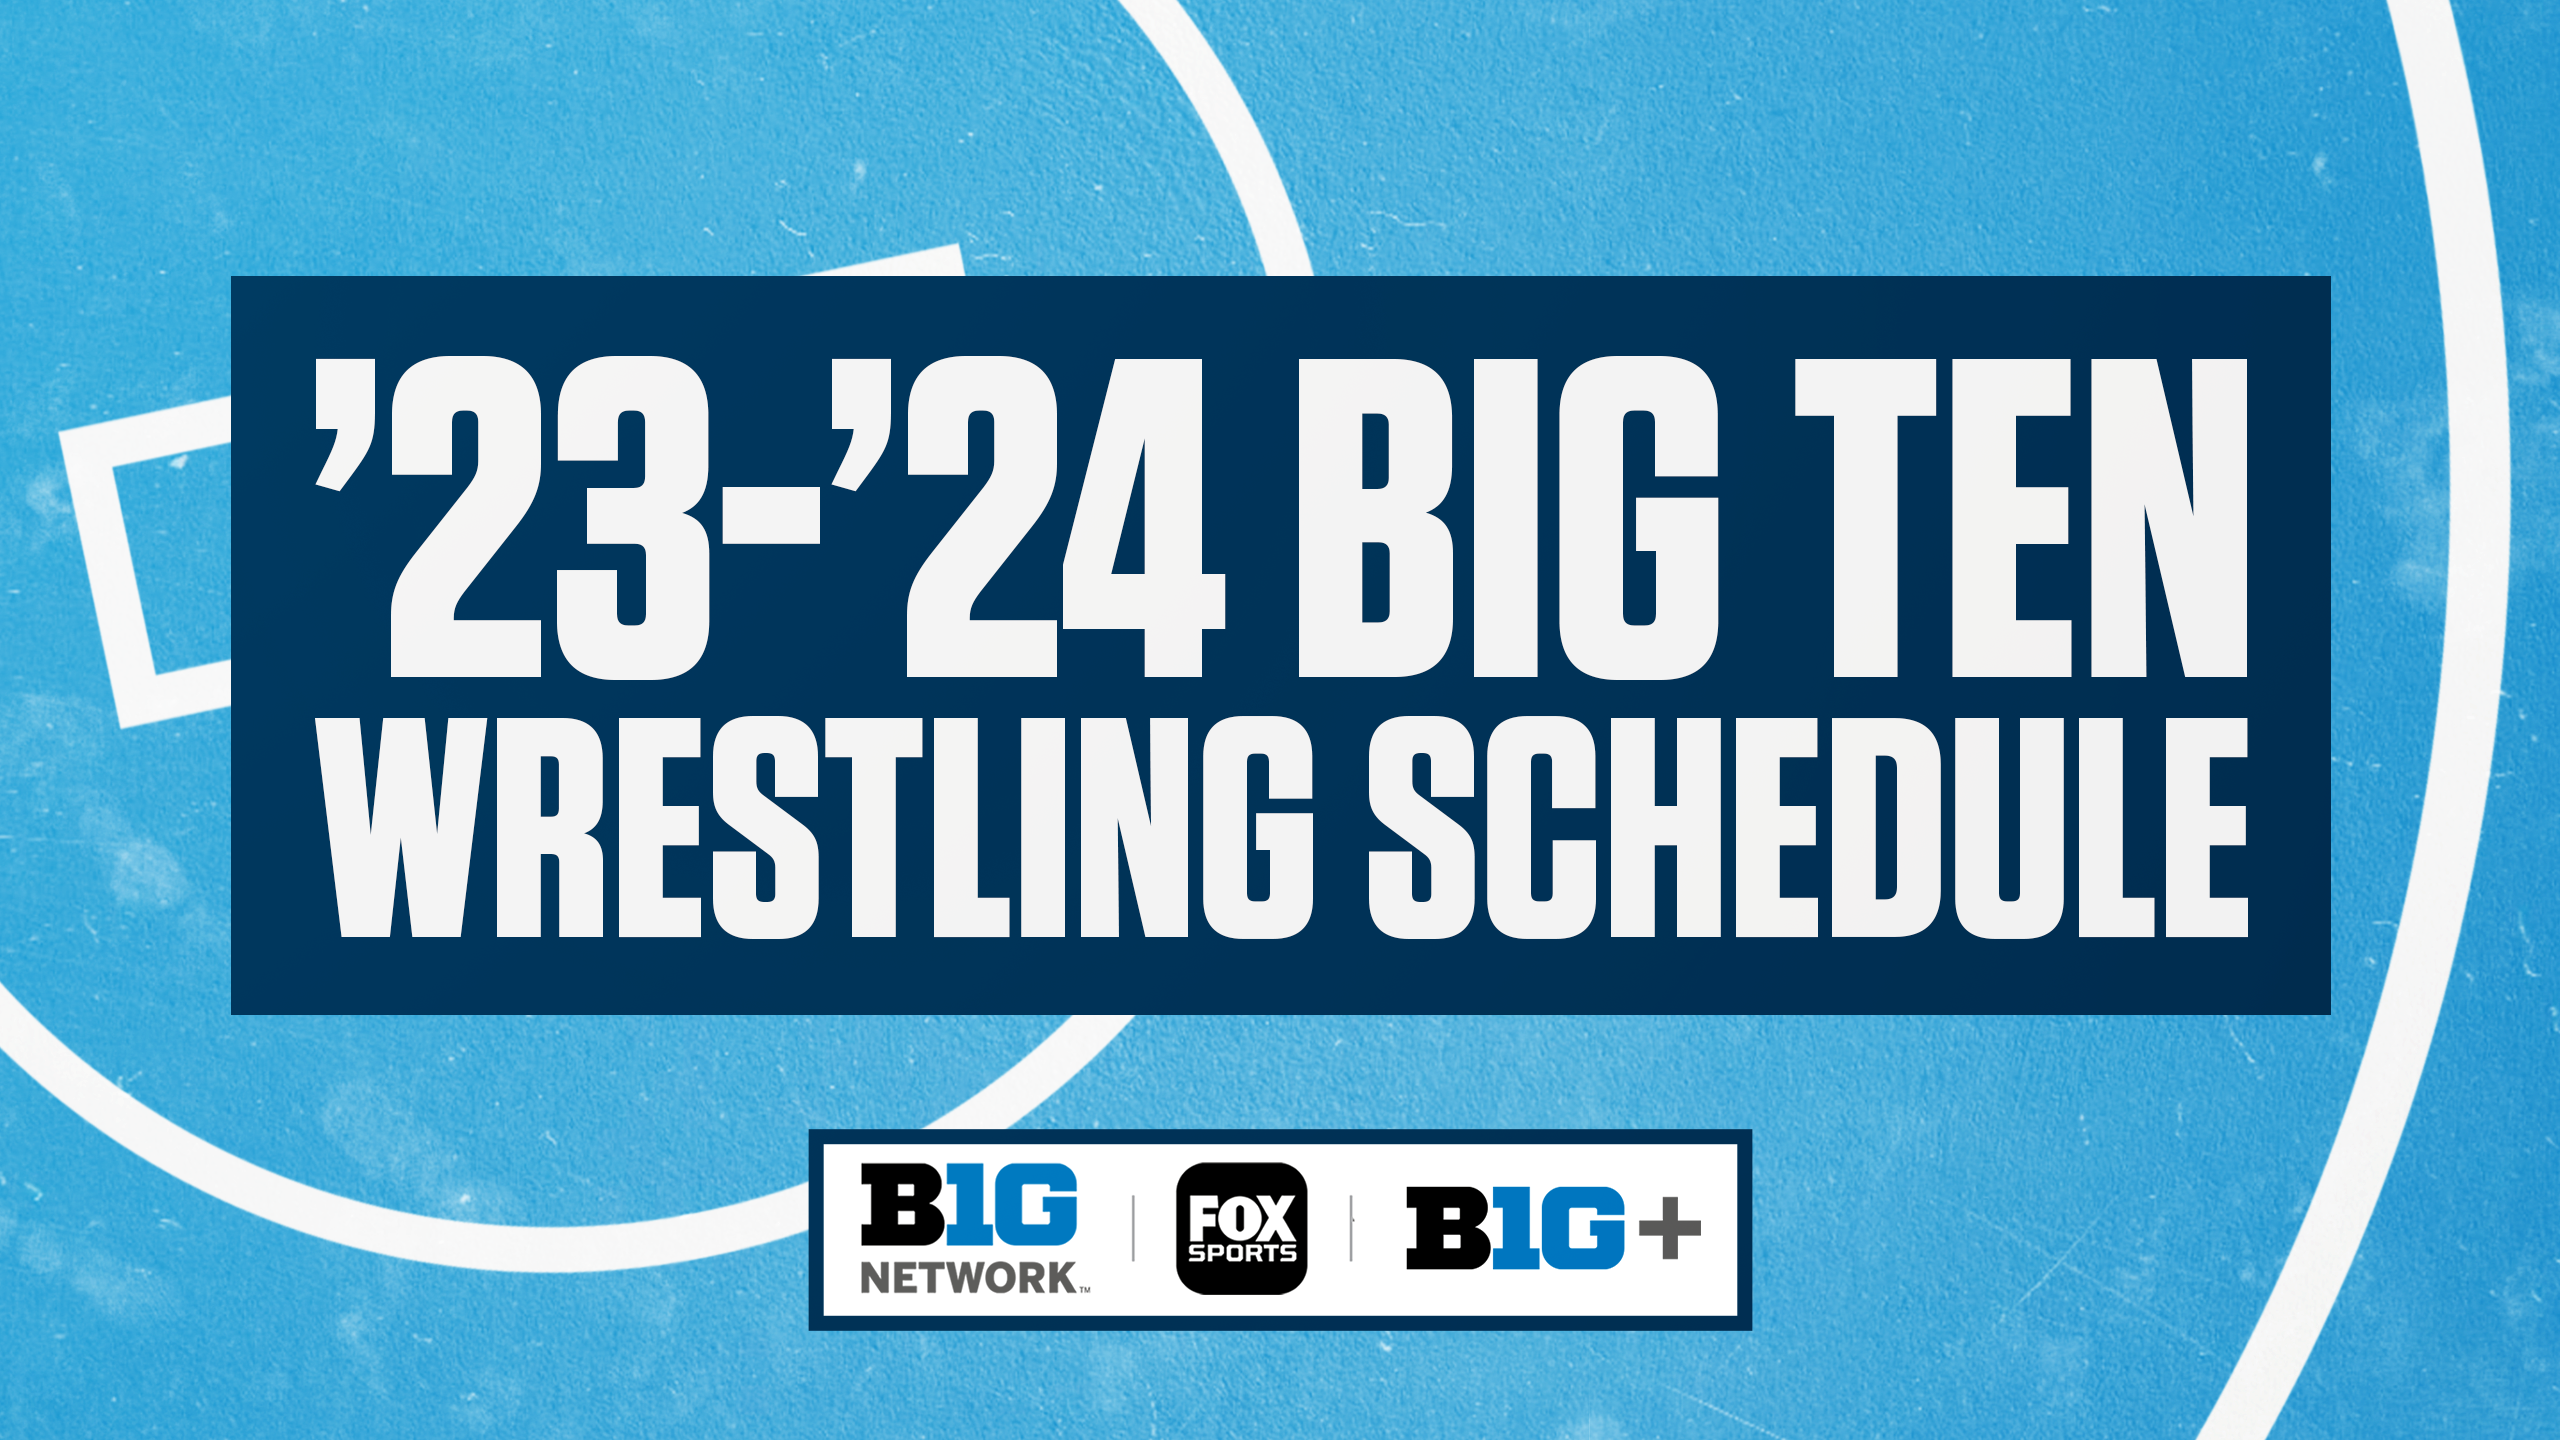 Big Ten Network Announces 202324 Big Ten Wrestling Schedule Big Ten